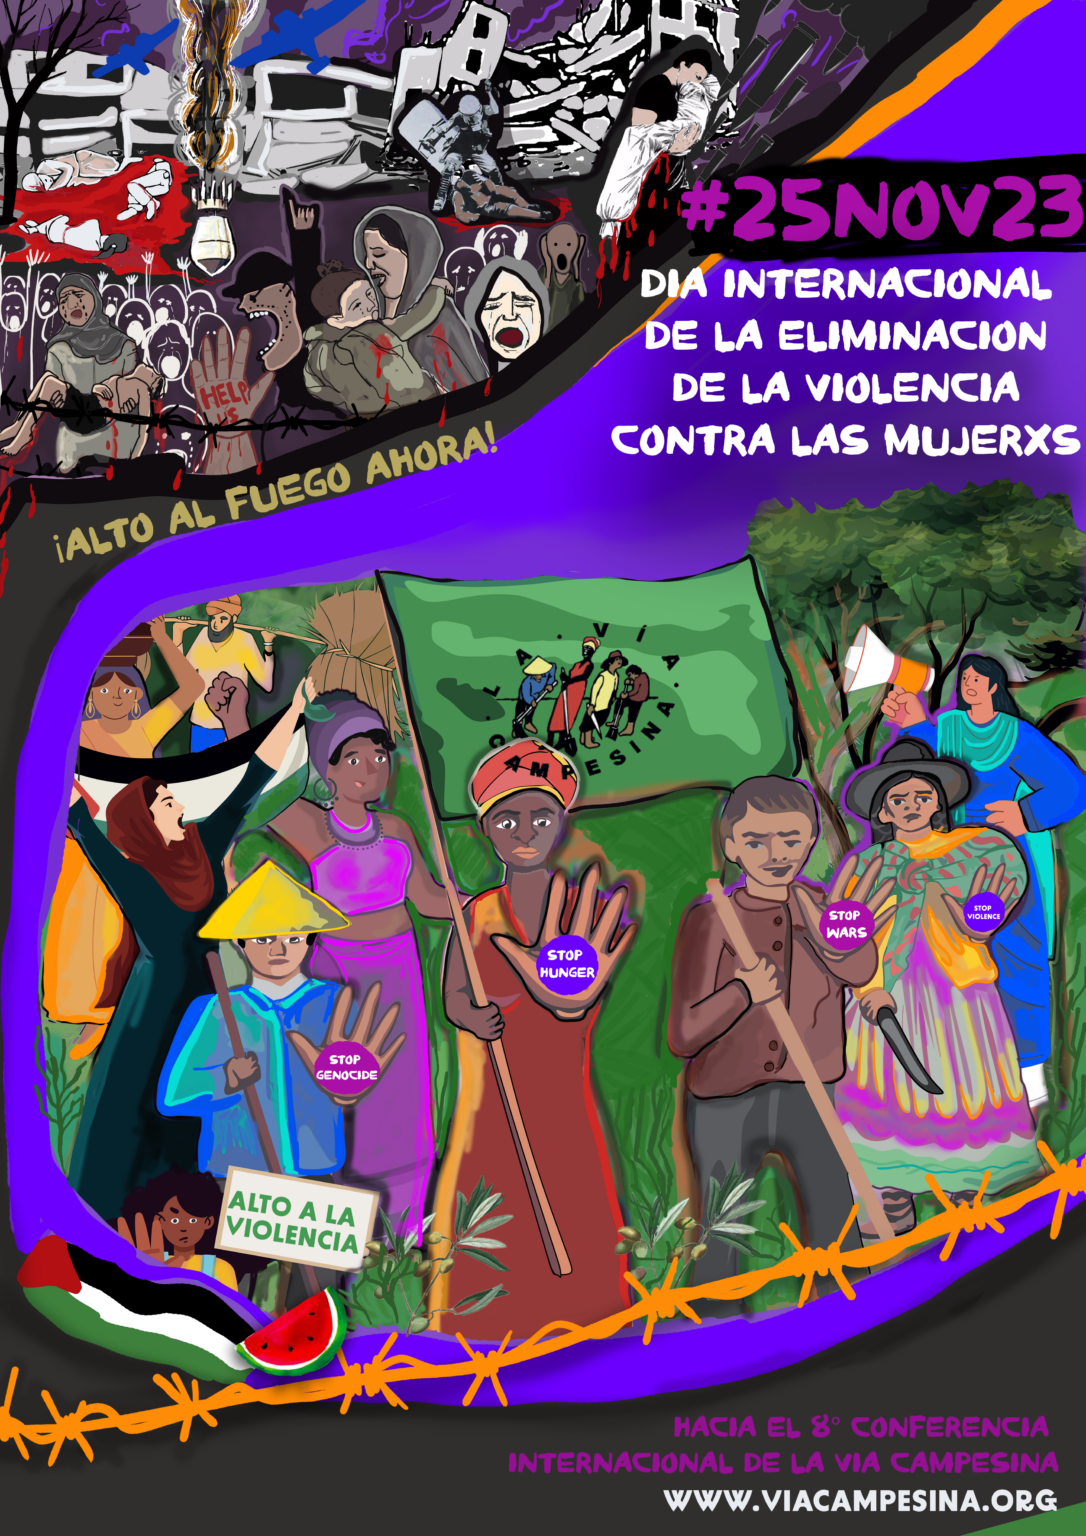 #25Nov23 | “Con convicción, abrimos camino al Feminismo Campesino y Popular, construimos Soberanía Alimentaria y luchamos contra las crisis y las violencias”